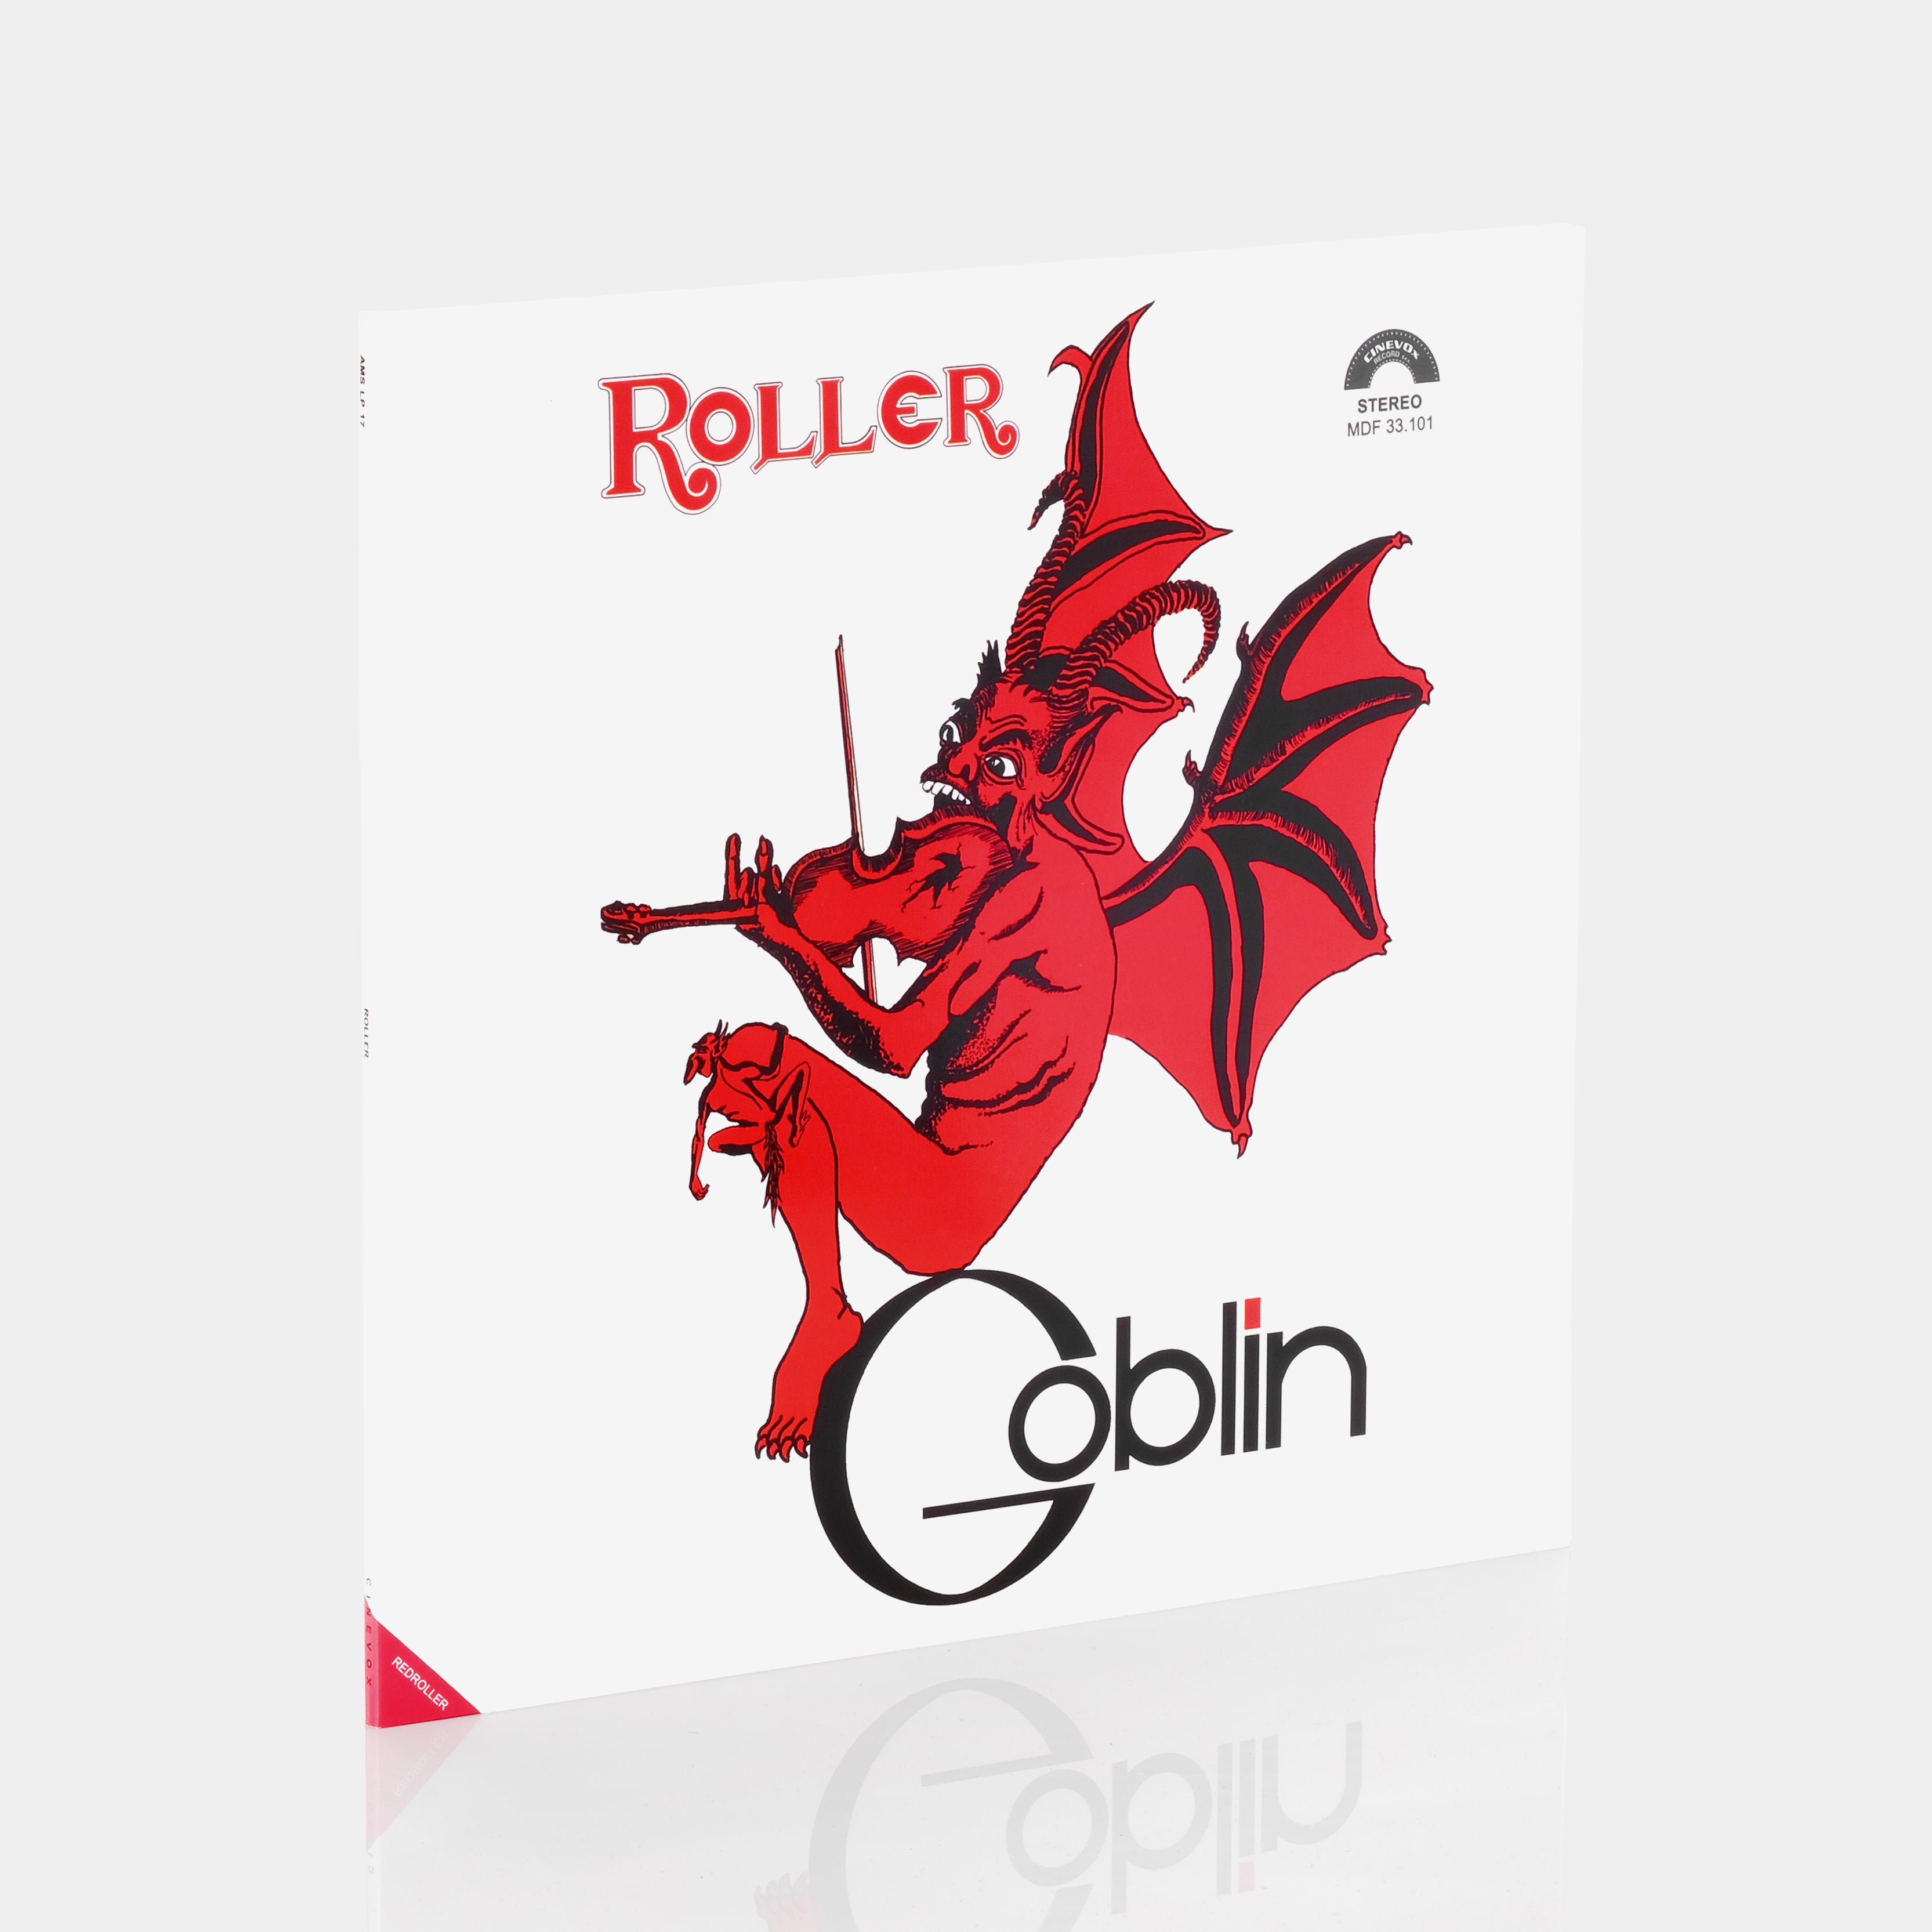 Goblin - Roller LP Crystal Vinyl Record